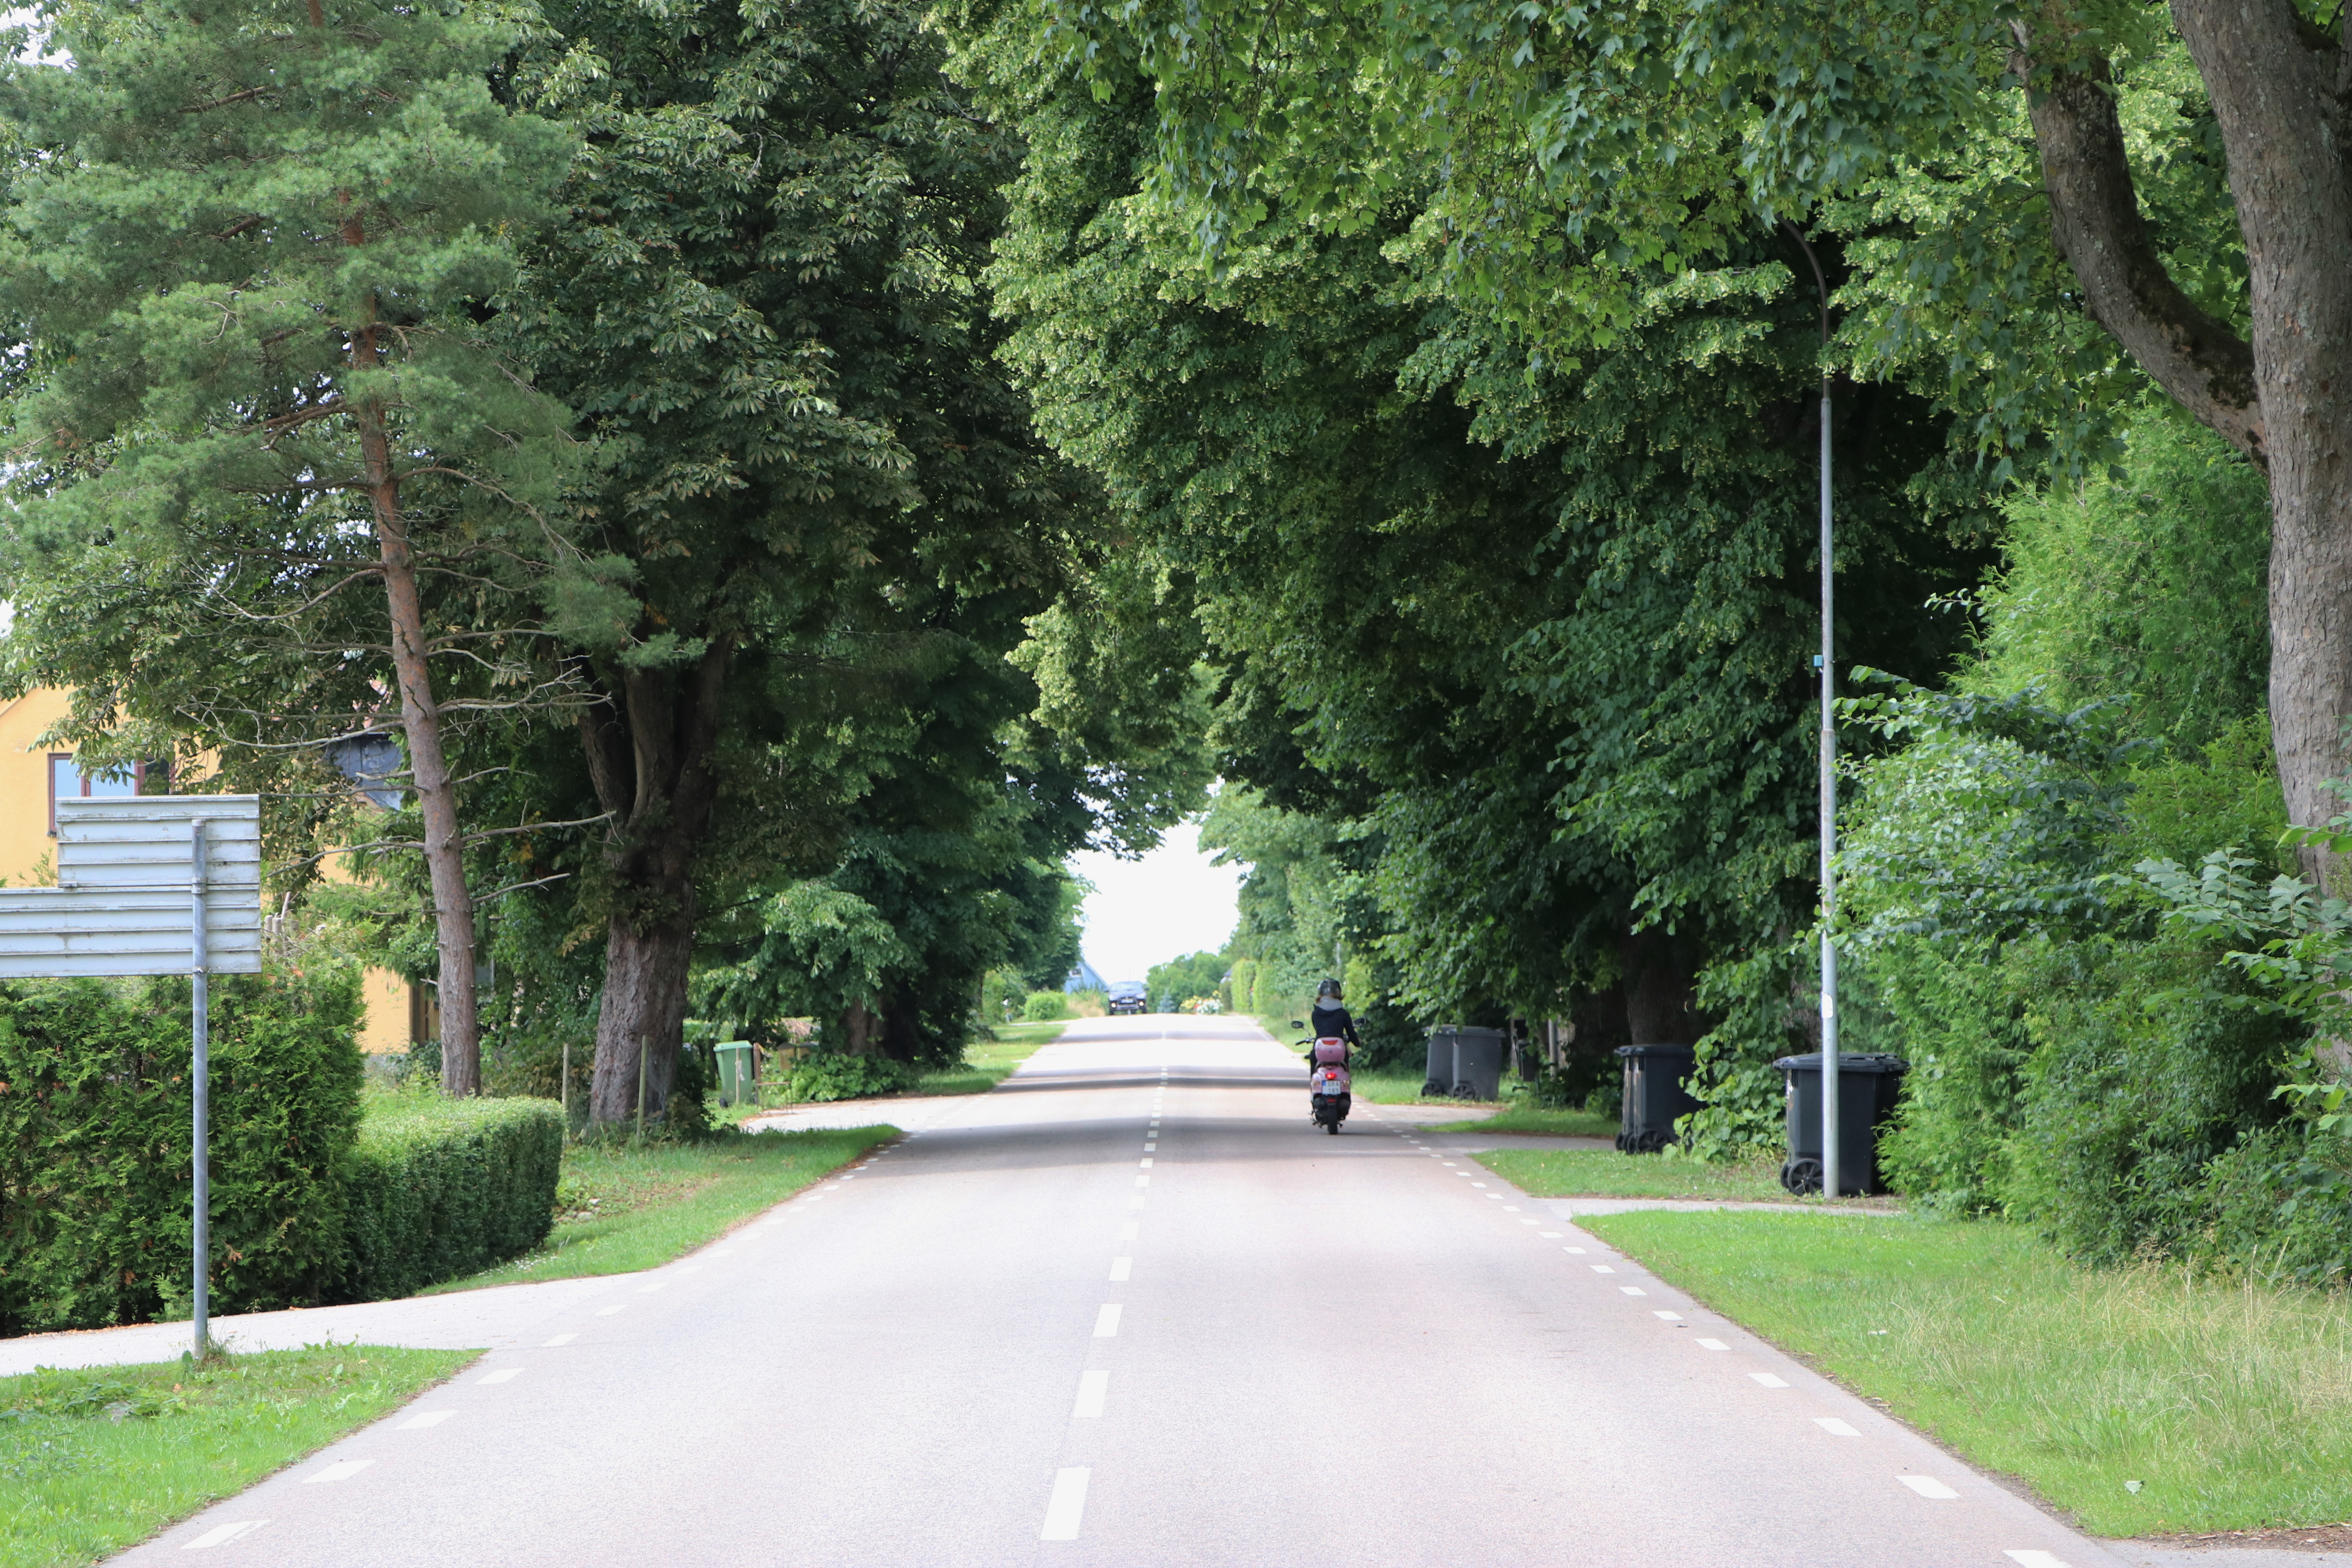 Tullesboallén i Bjärsjöladugård väg allé ung tjej kör moped